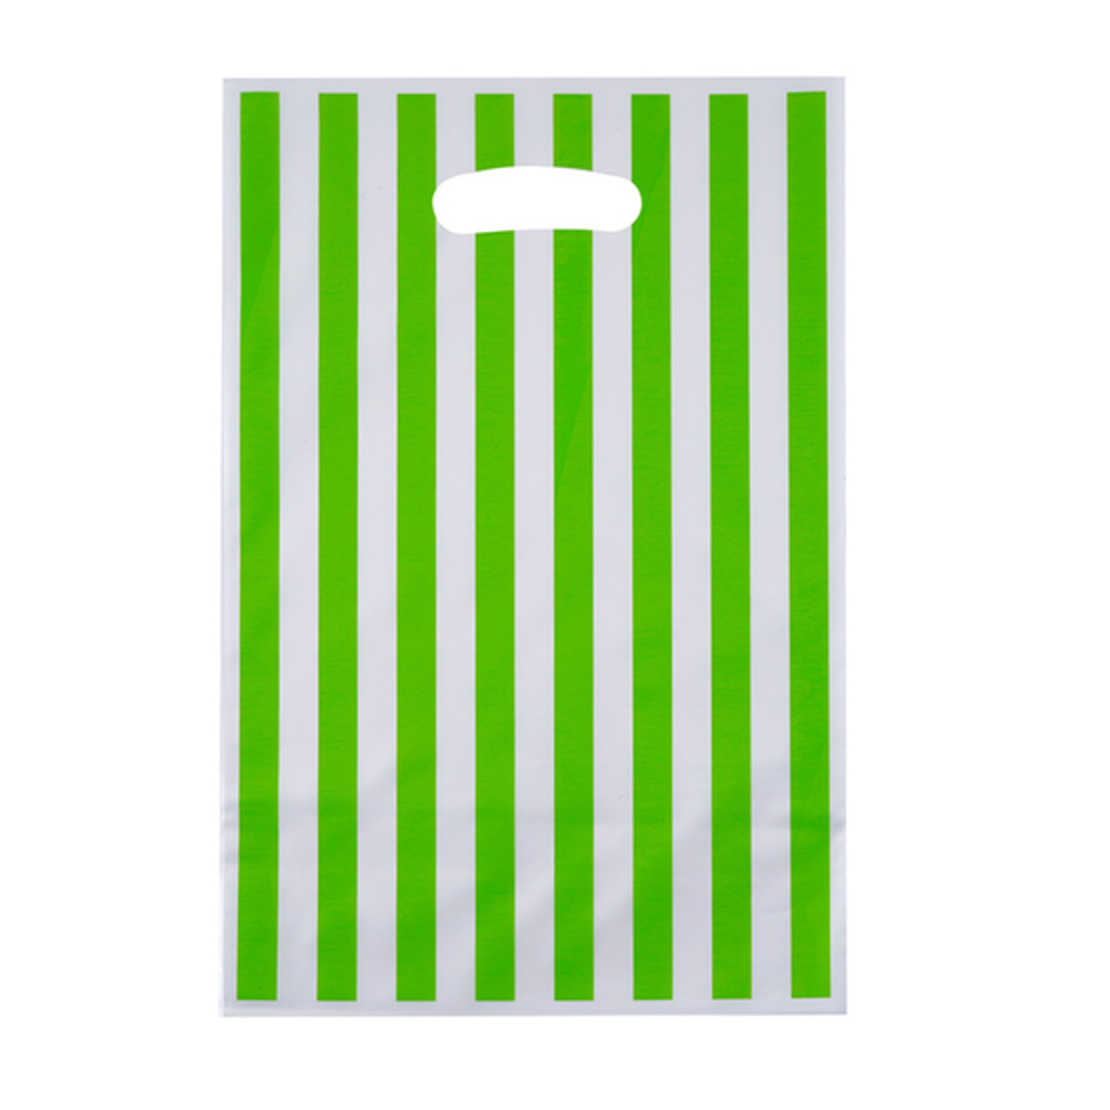 שקיות הפתעה ניילון (10יח') - פסים ירוק בהיר